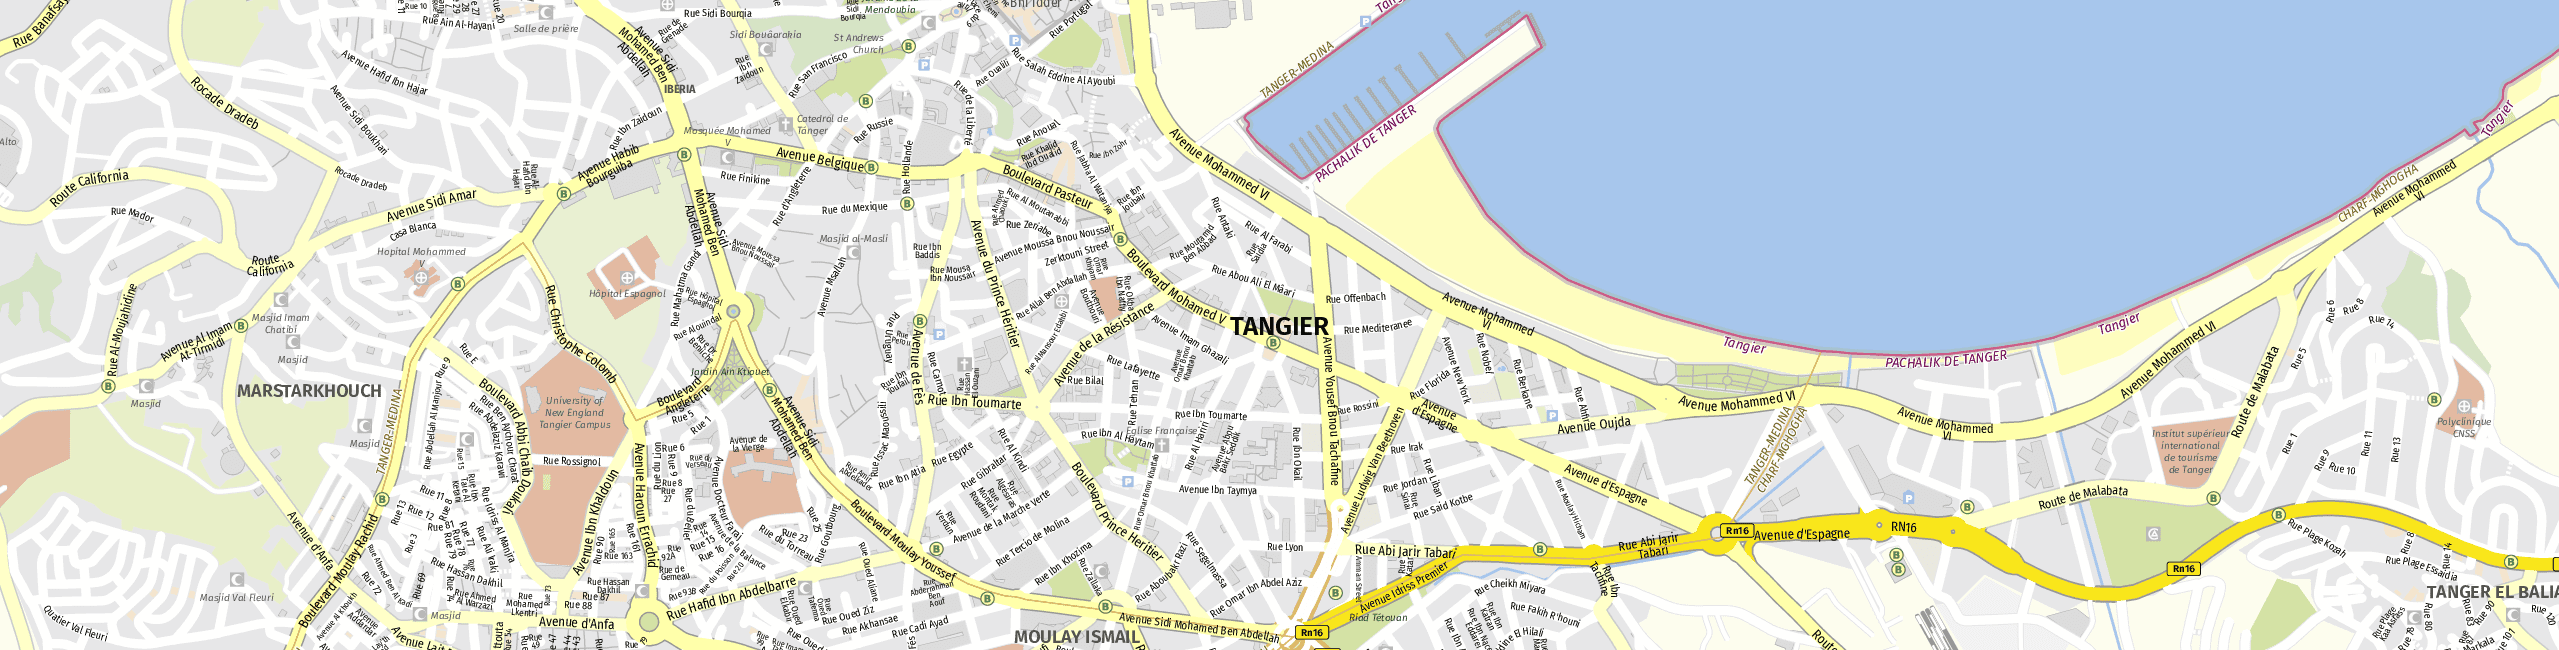 Stadtplan Tanger zum Downloaden.